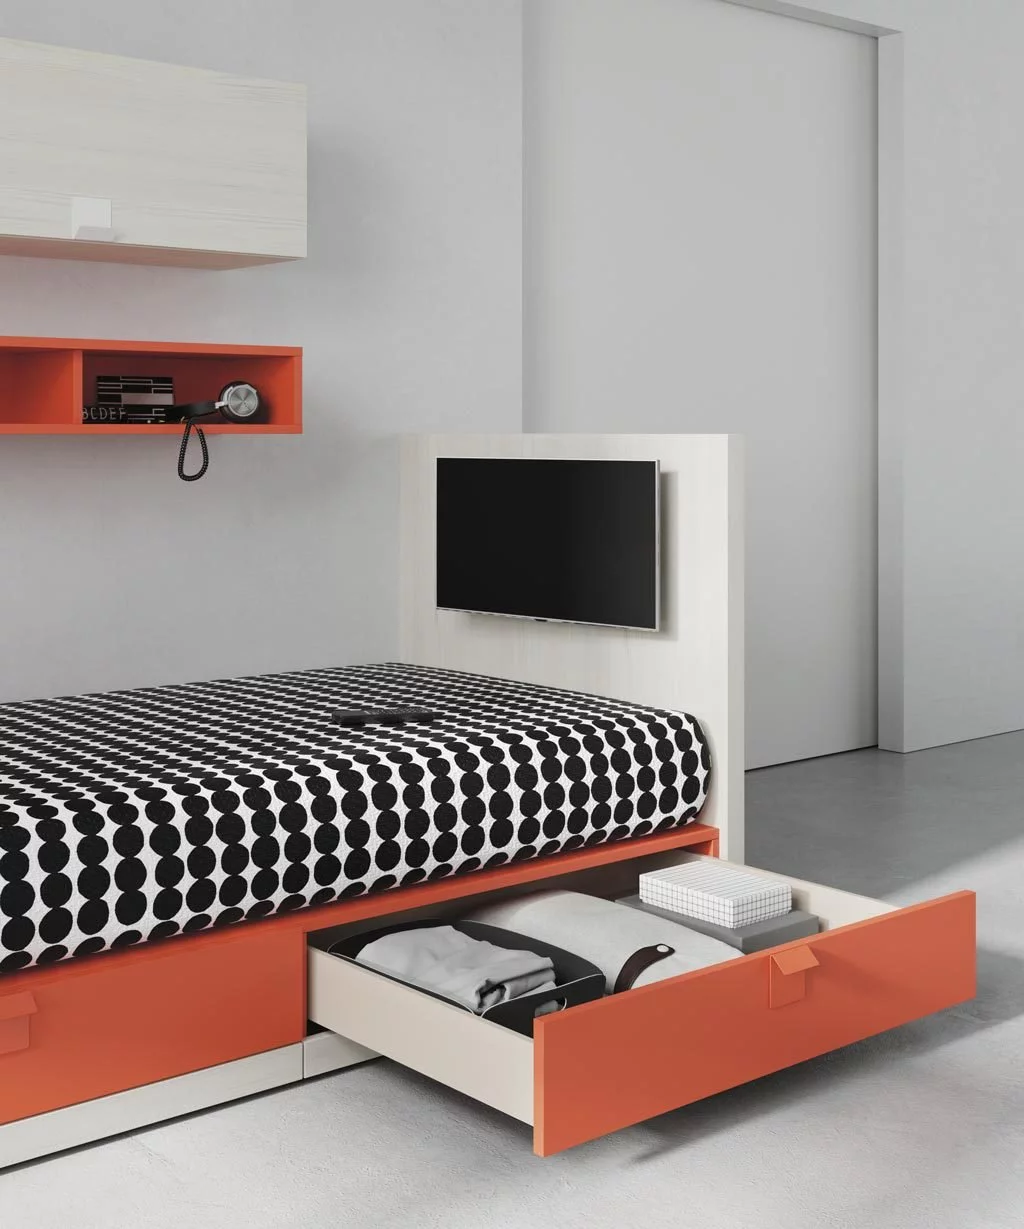 La cama dispone de dos cajones de gran capacidad y puedes tener una TV en la cama